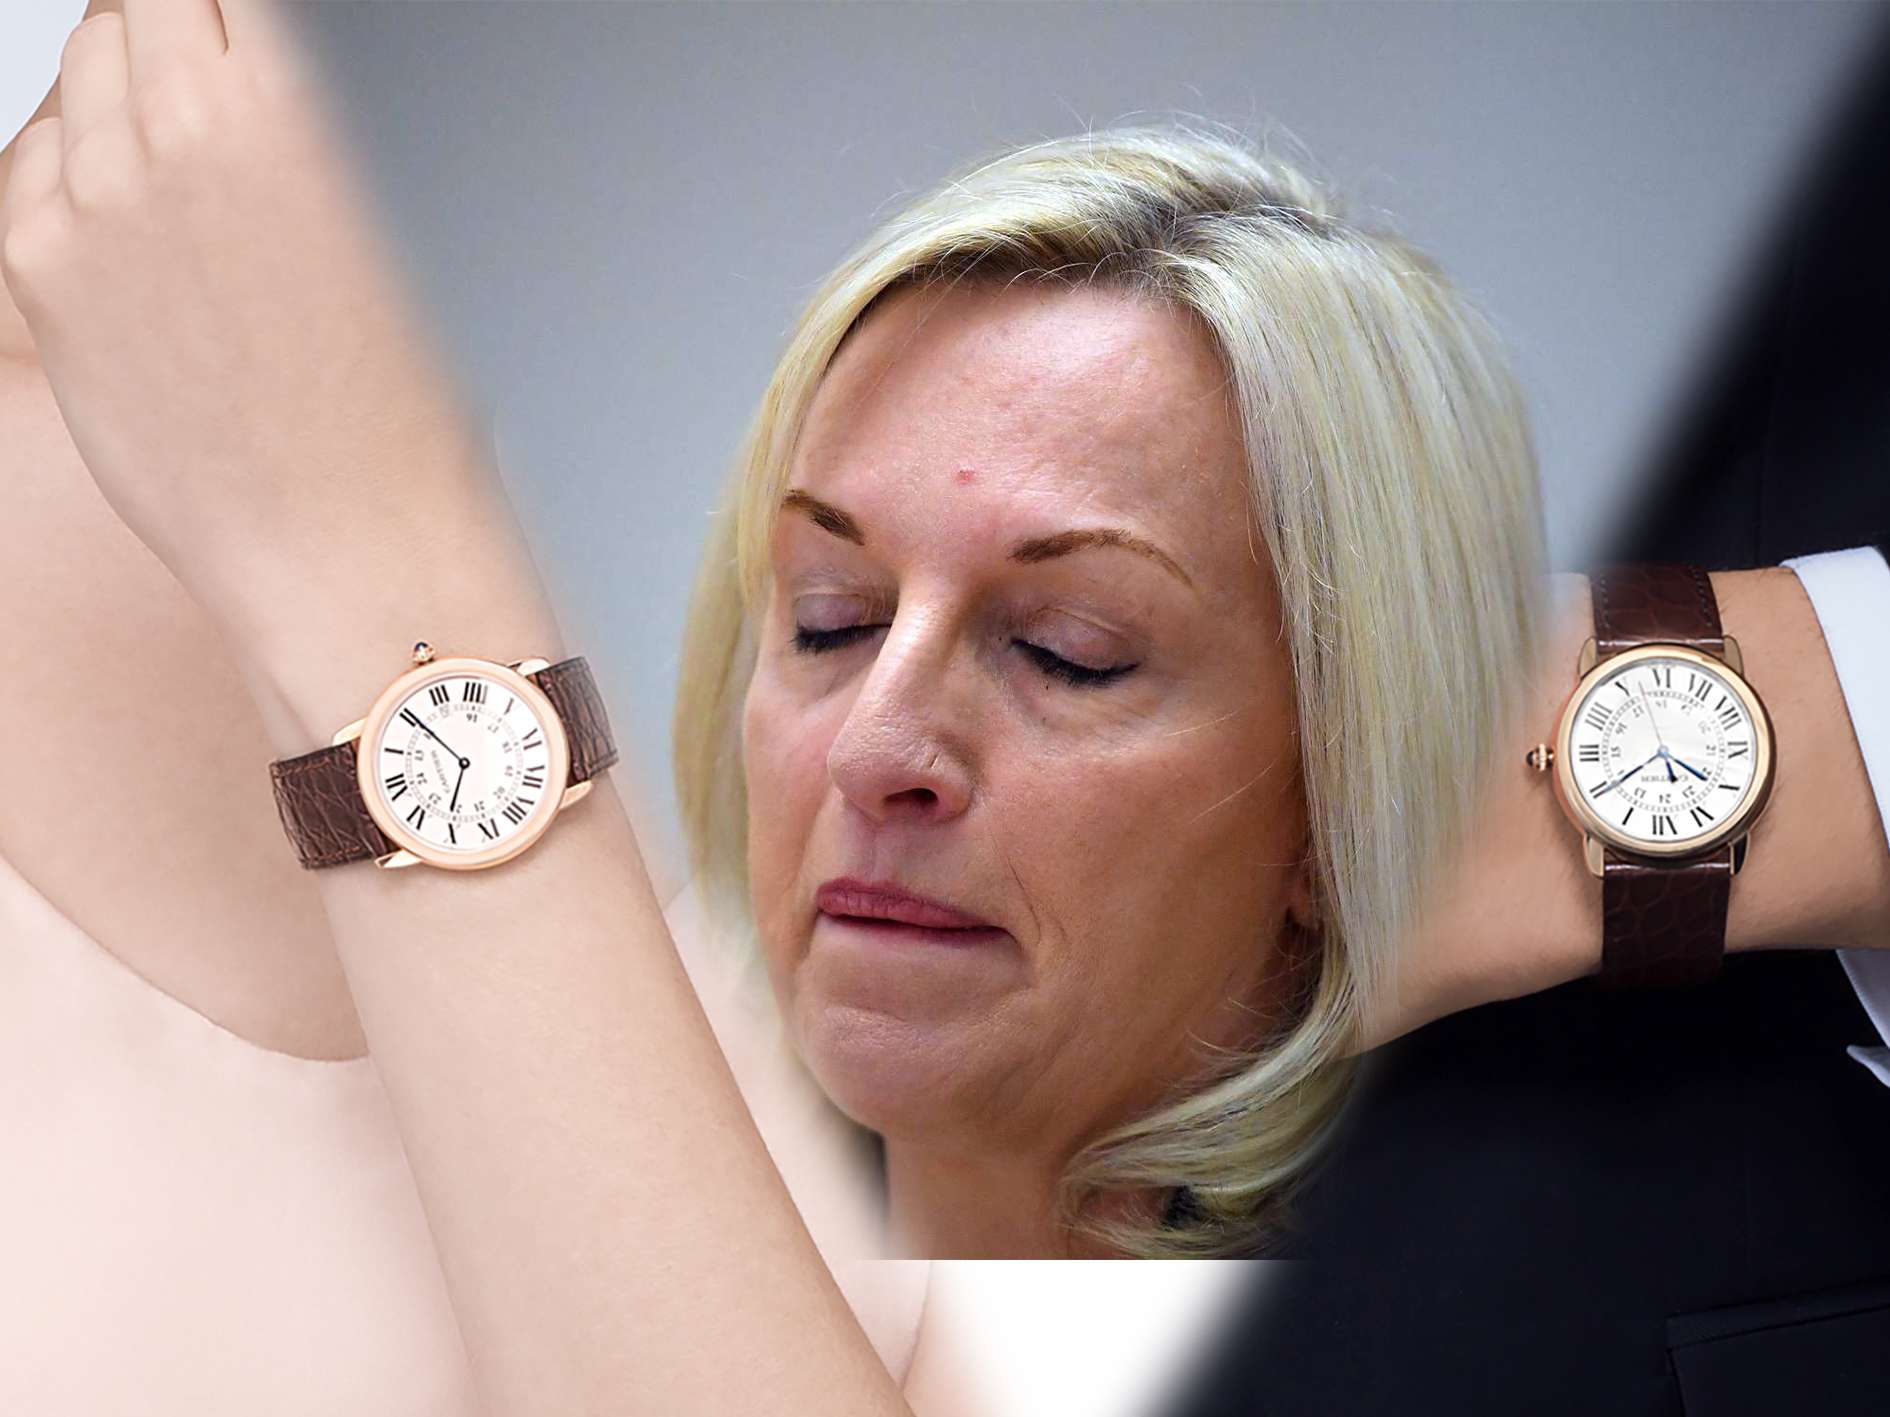 Australia Post staff a Cartier watch 